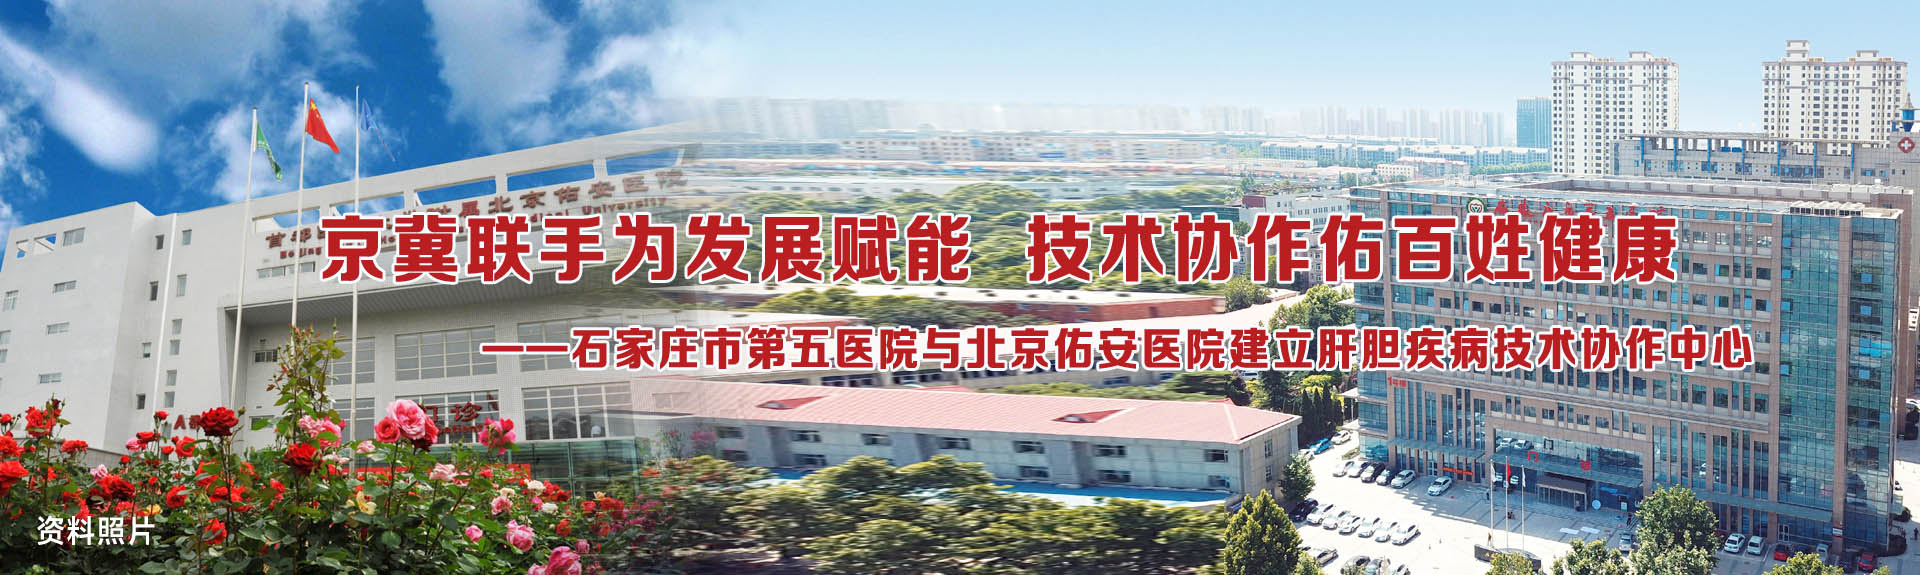 我院与北京佑安医院建立肝胆疾病技术协作中心